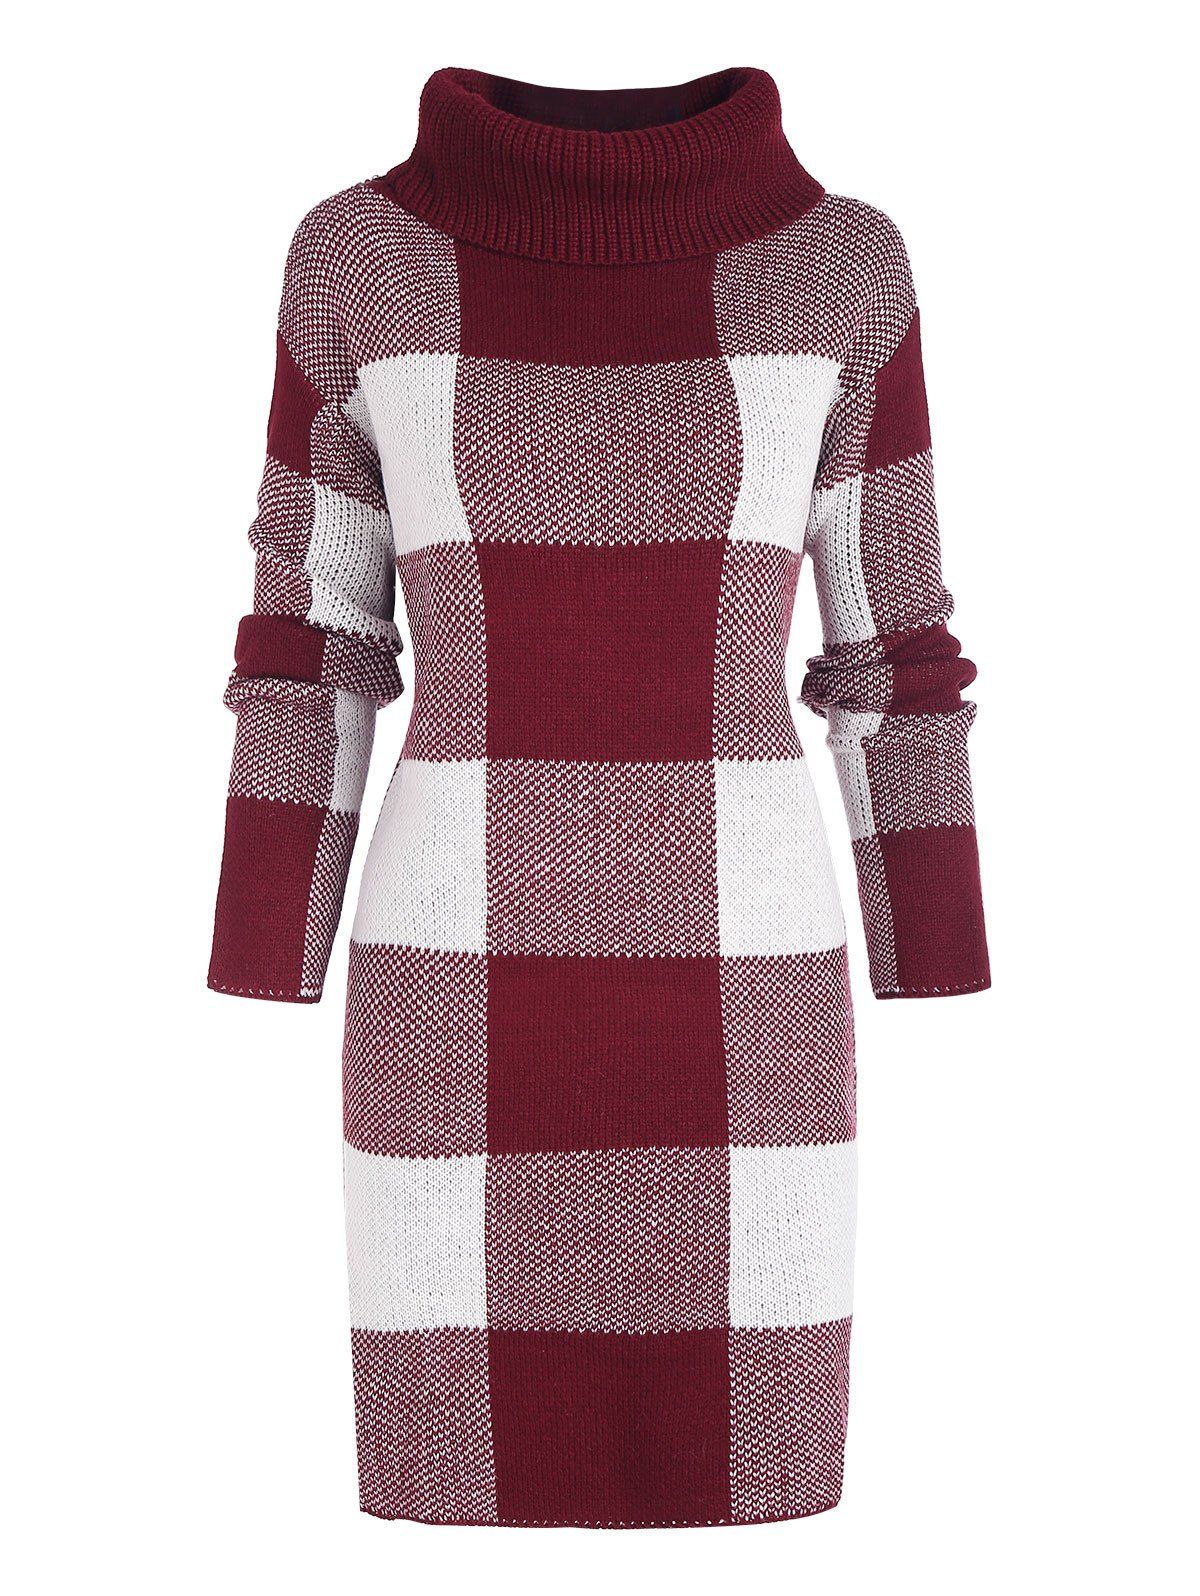 Plaid Turtleneck Mini Sweater Dress - DEEP RED L